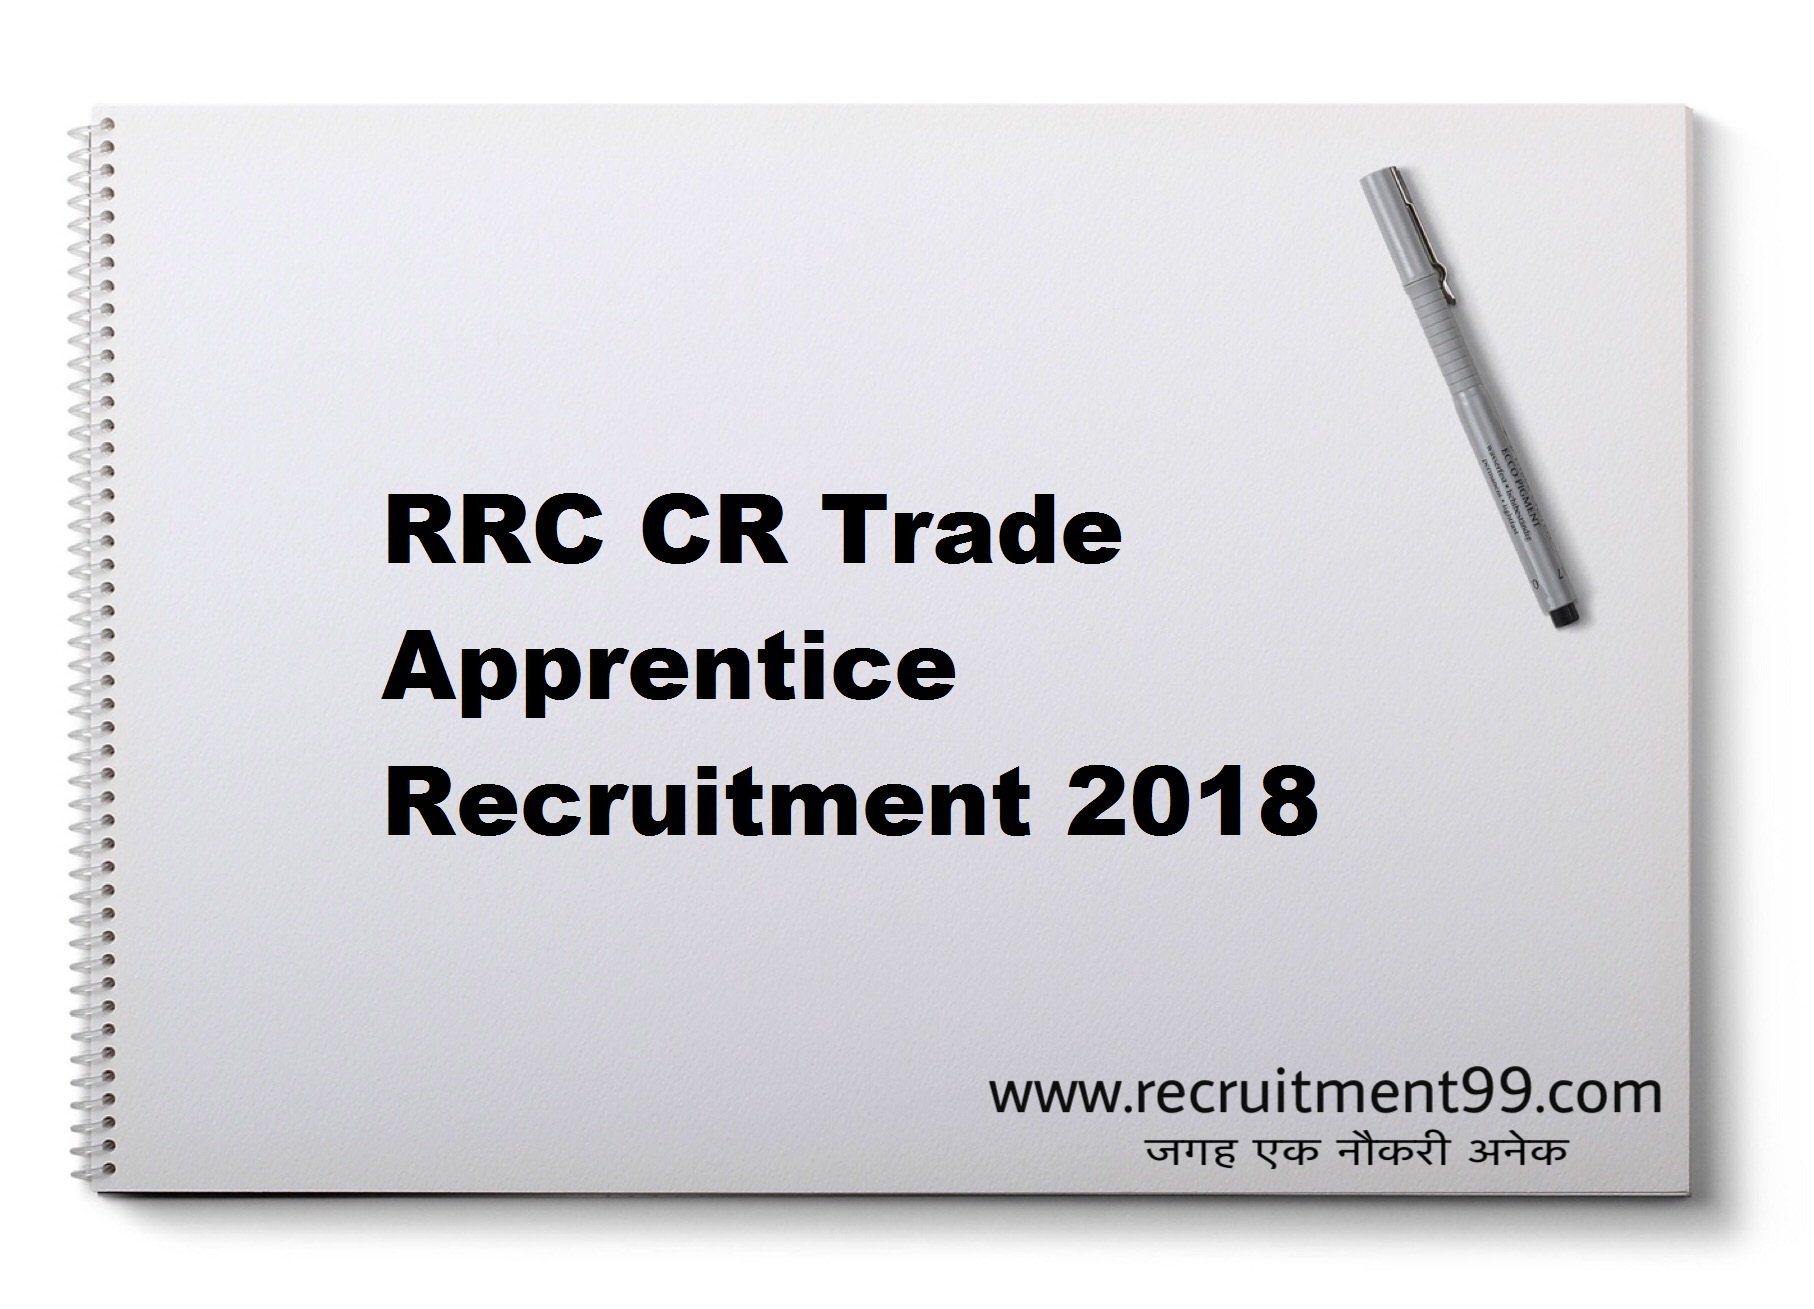 RRC CR Trade Apprentice Recruitment Merit List 2018